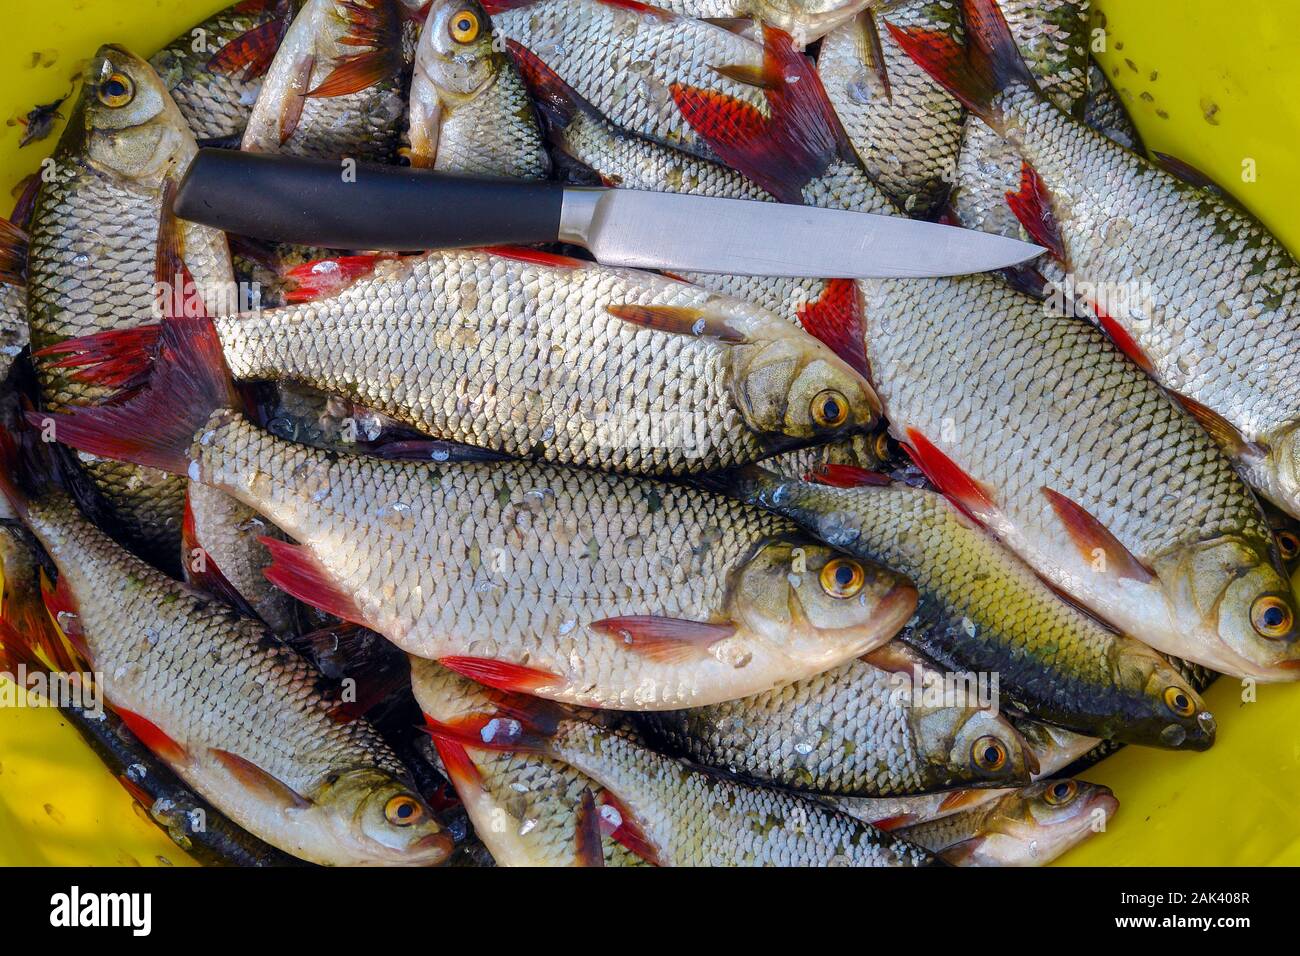 Gefangen Süßwasser Rudd Fisch mit silbernen Schuppen rote Flossen - Alamy